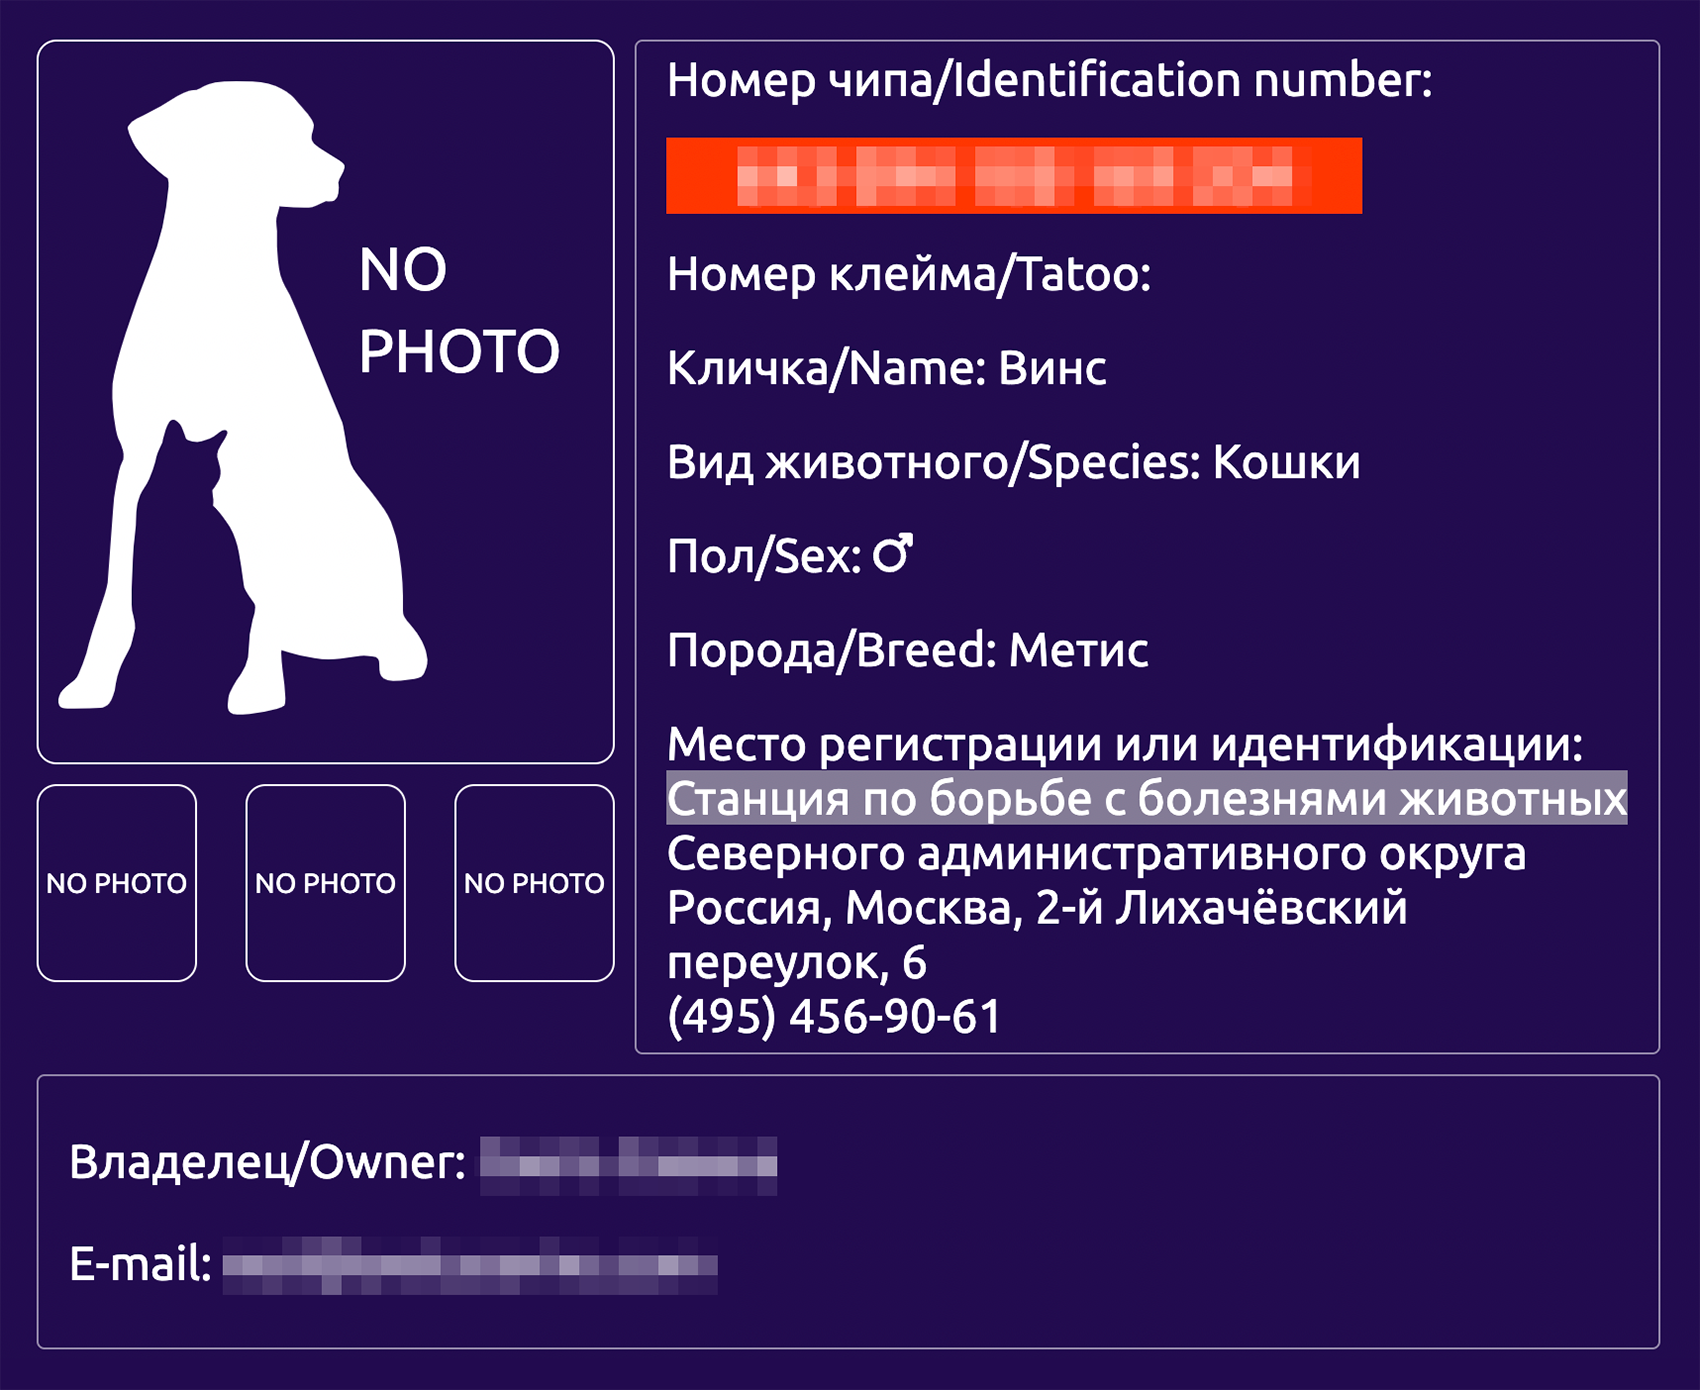 Если кот потеряется, те, кто его найдет, смогут связаться с клиникой, которая сообщит контакты владельца. Источник: new.animal-id.ru